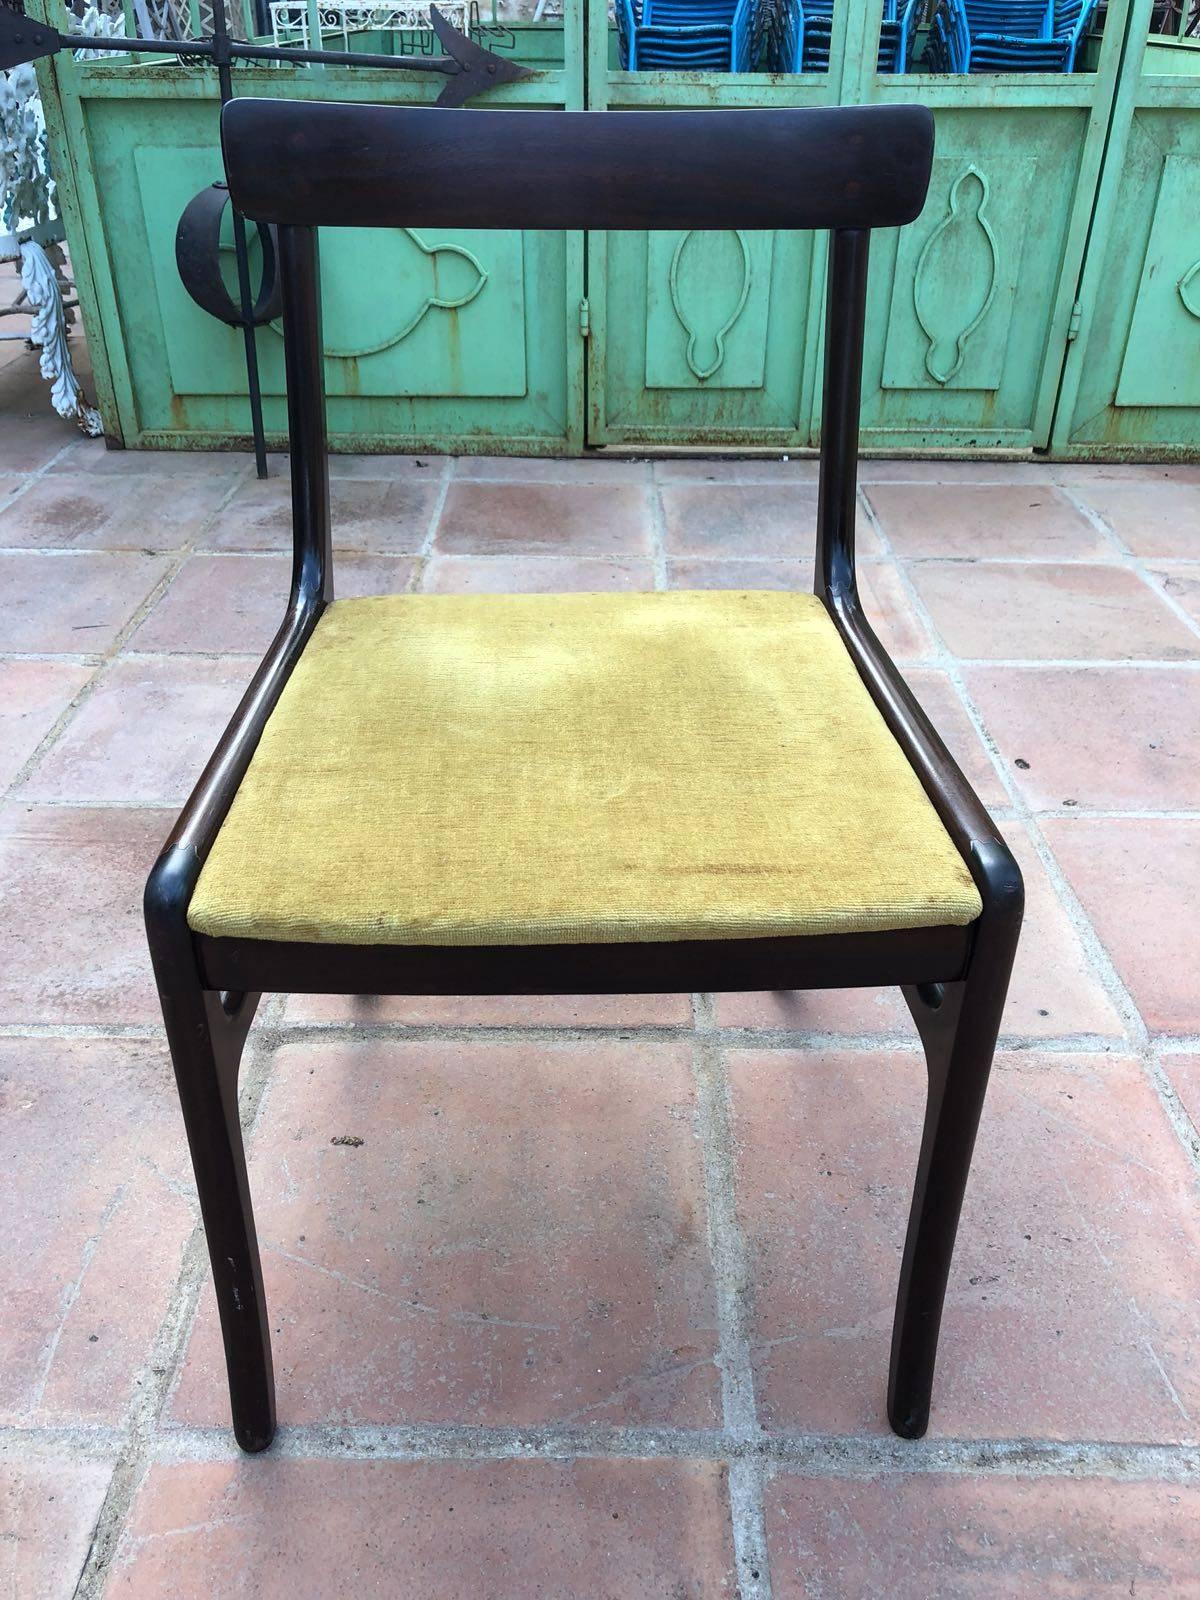 Ensemble de six chaises de salle à manger, modèle 'Rungstedlund' PJ 34 par Ole Wanscher pour P. Jeppesen, St. Heddinge, acajou, tapisserie bleue, Danemark, années 1960.

Cet ensemble classique de six chaises de salle à manger, conçu par le